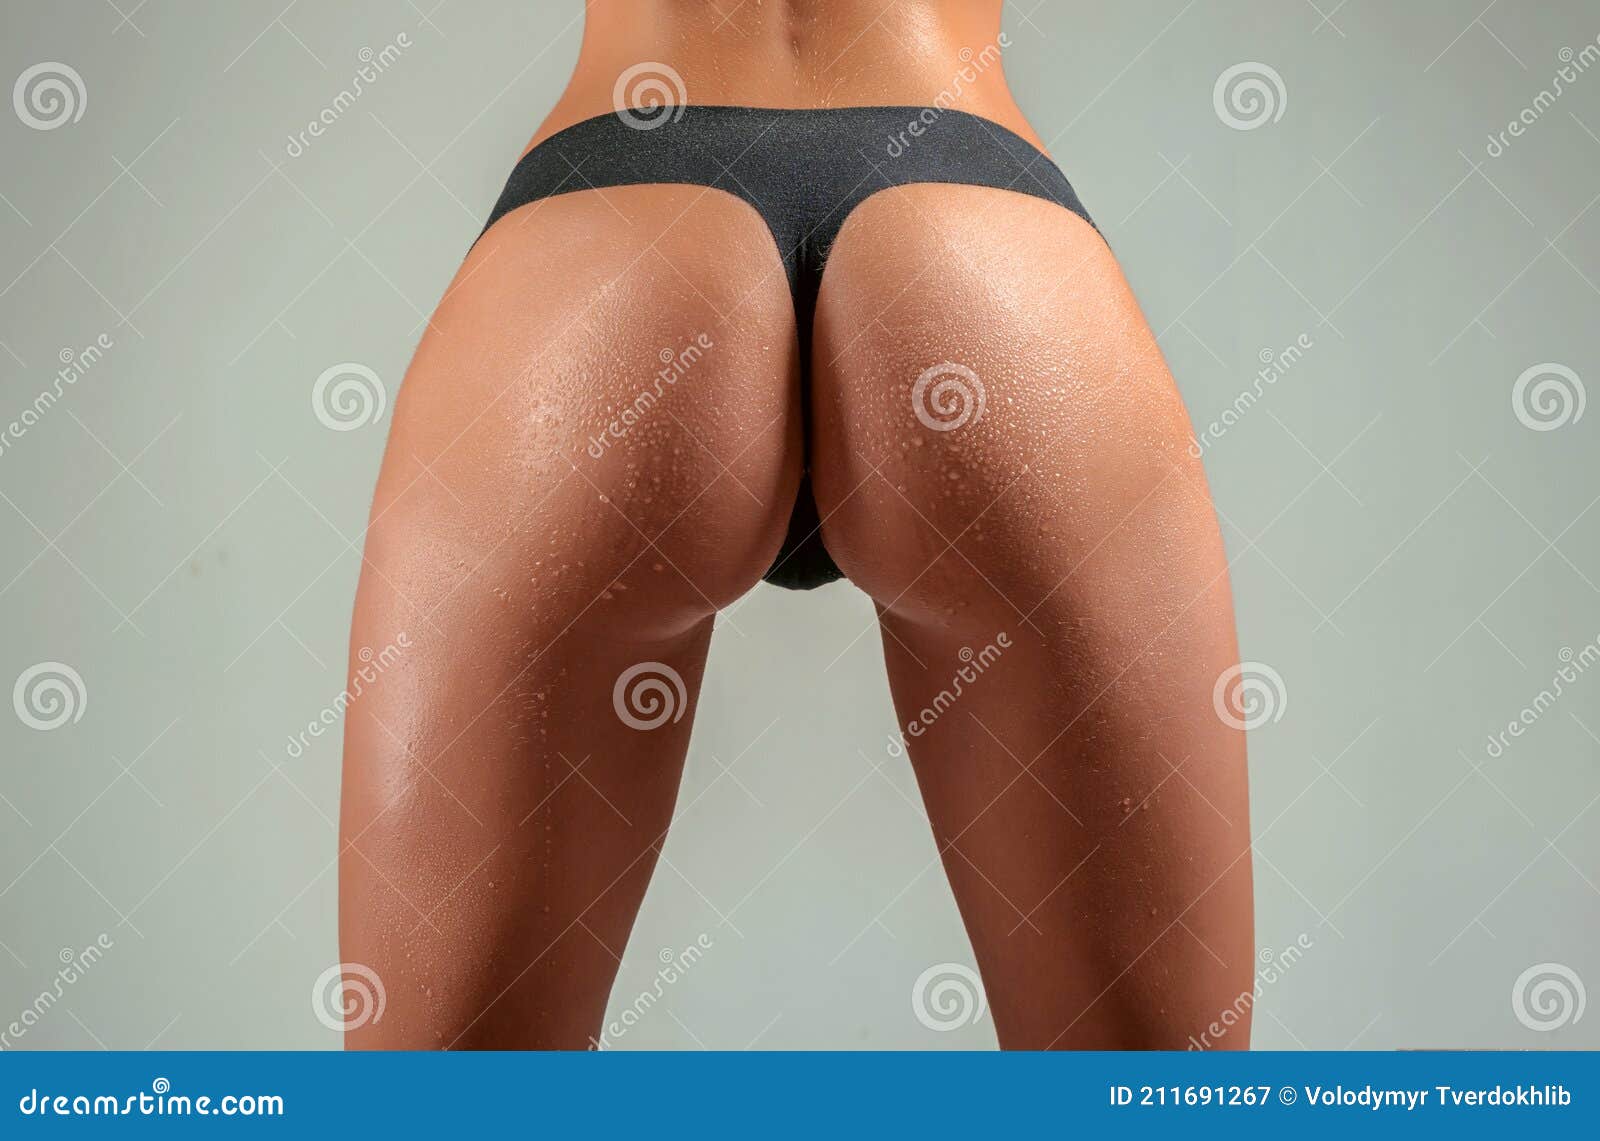 Ass, Female Butt image